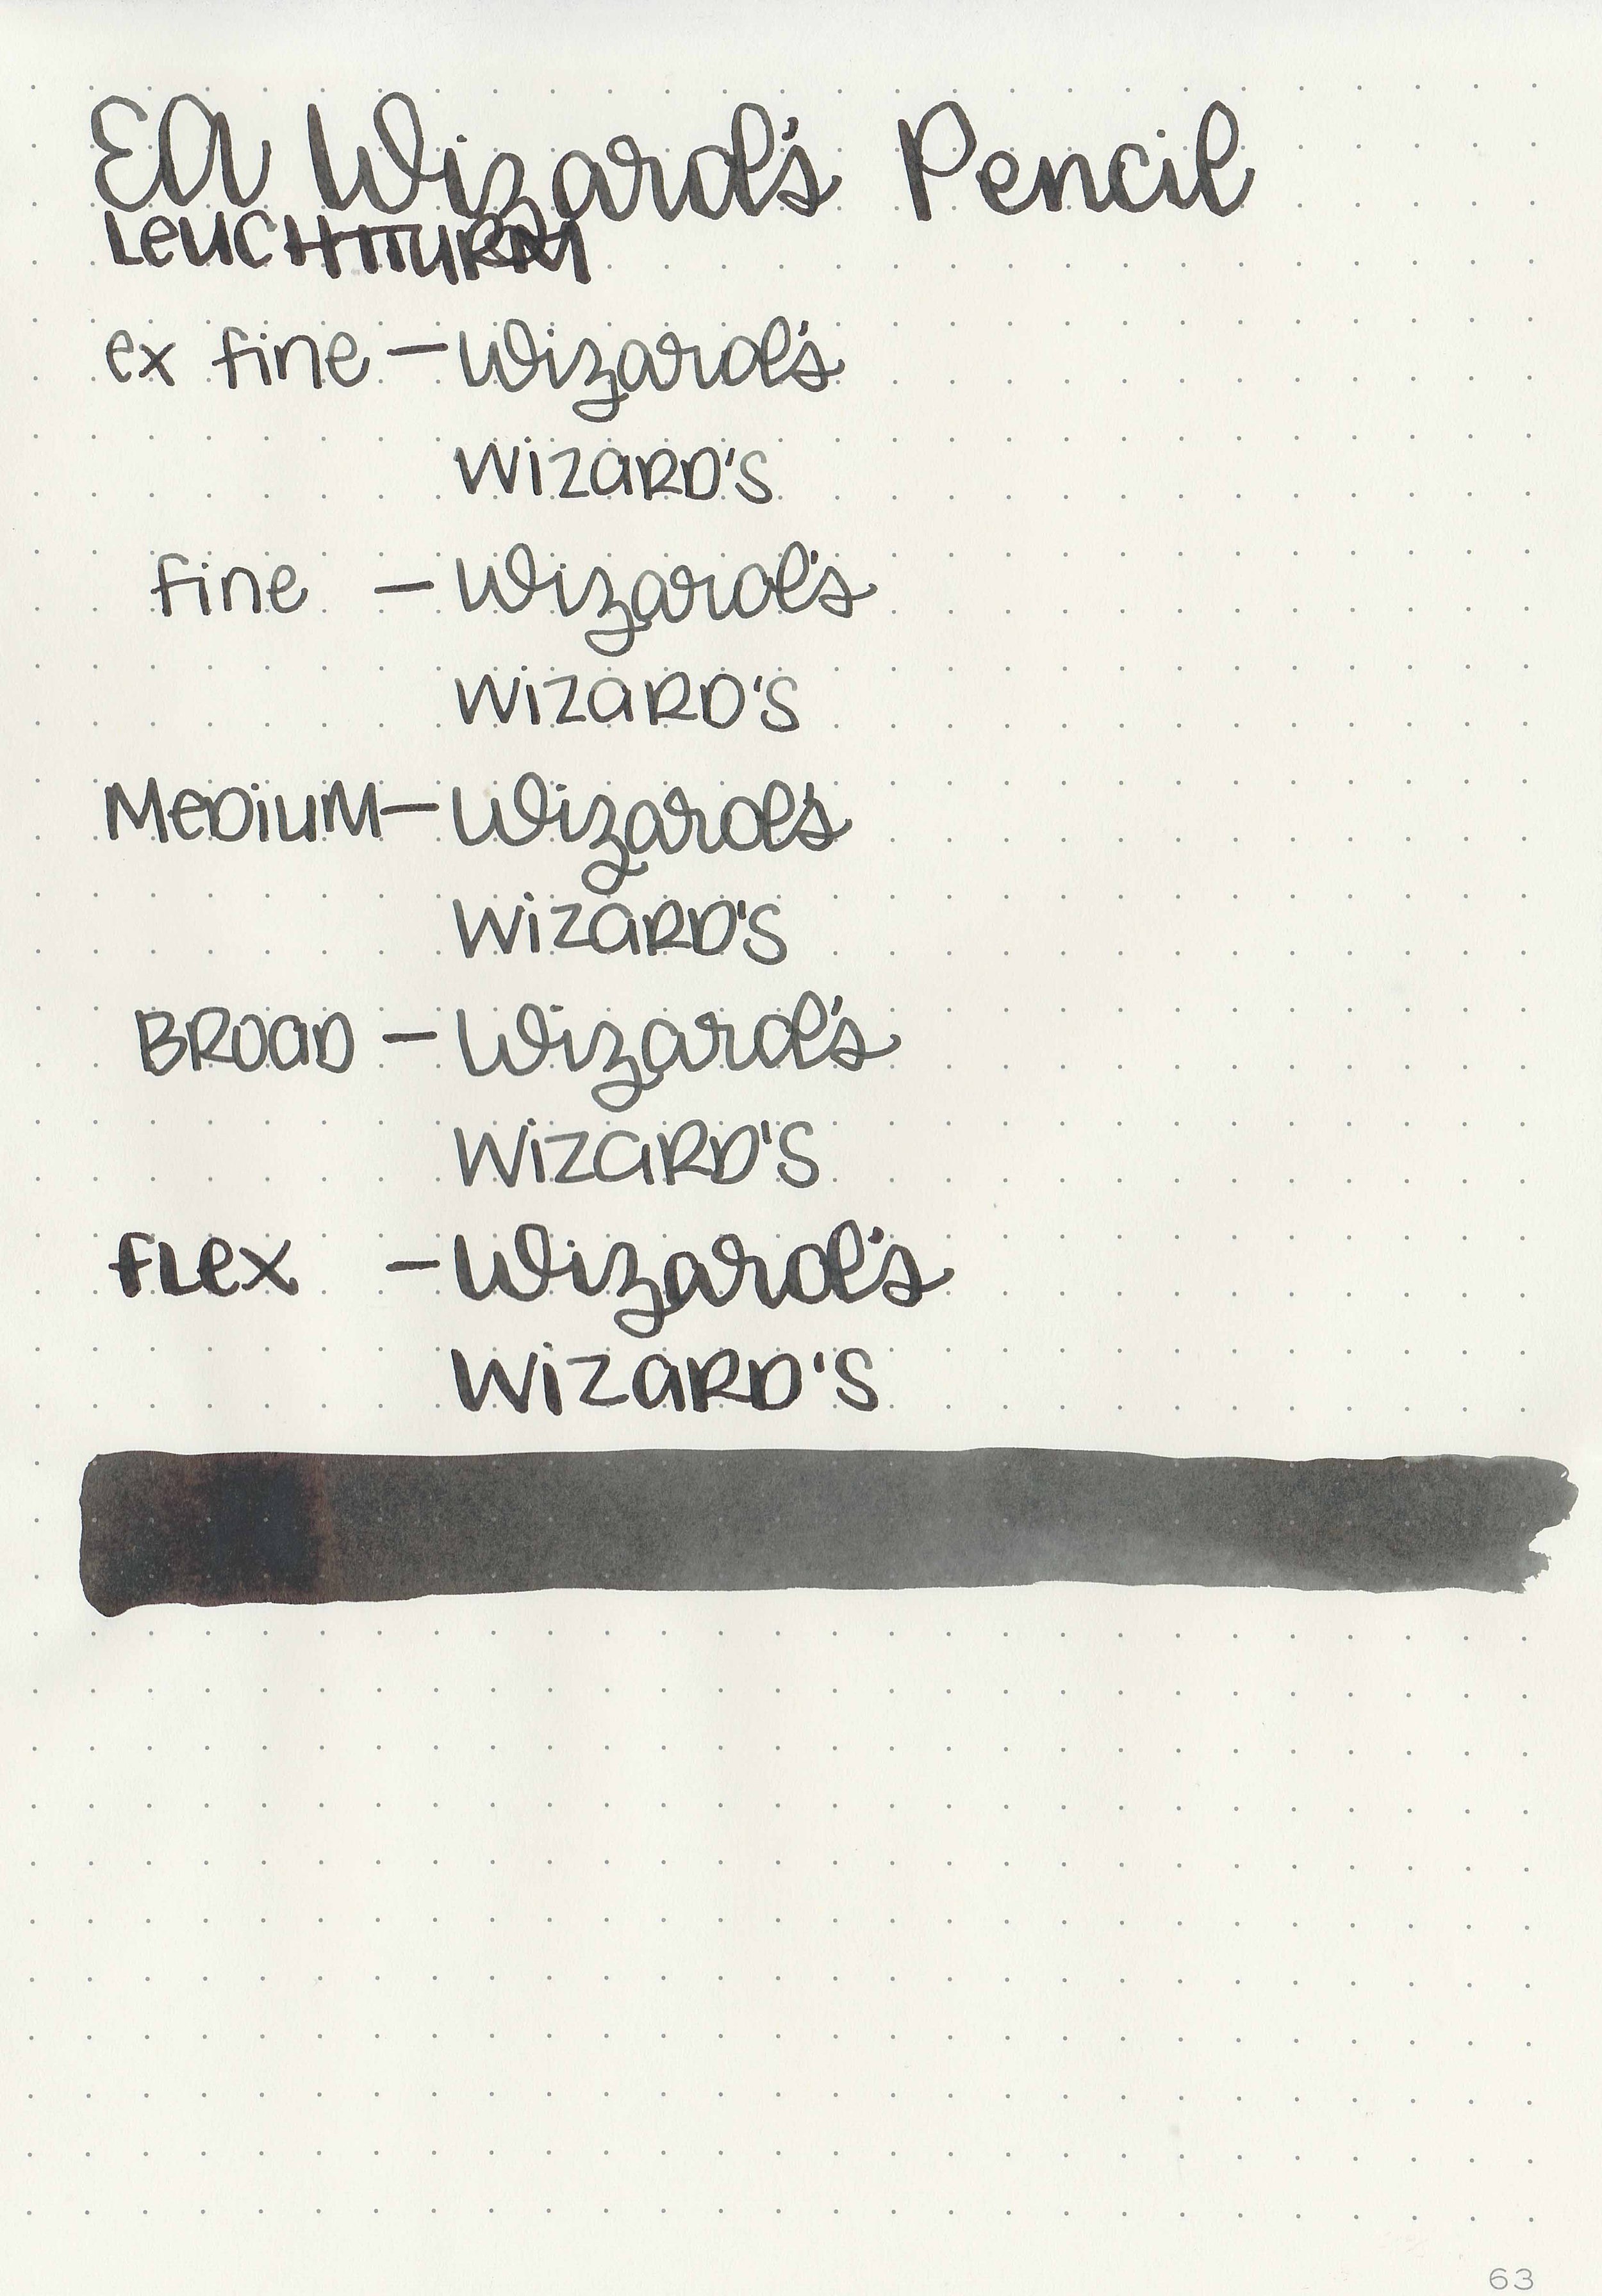 end-wizards-pencil-9.jpg